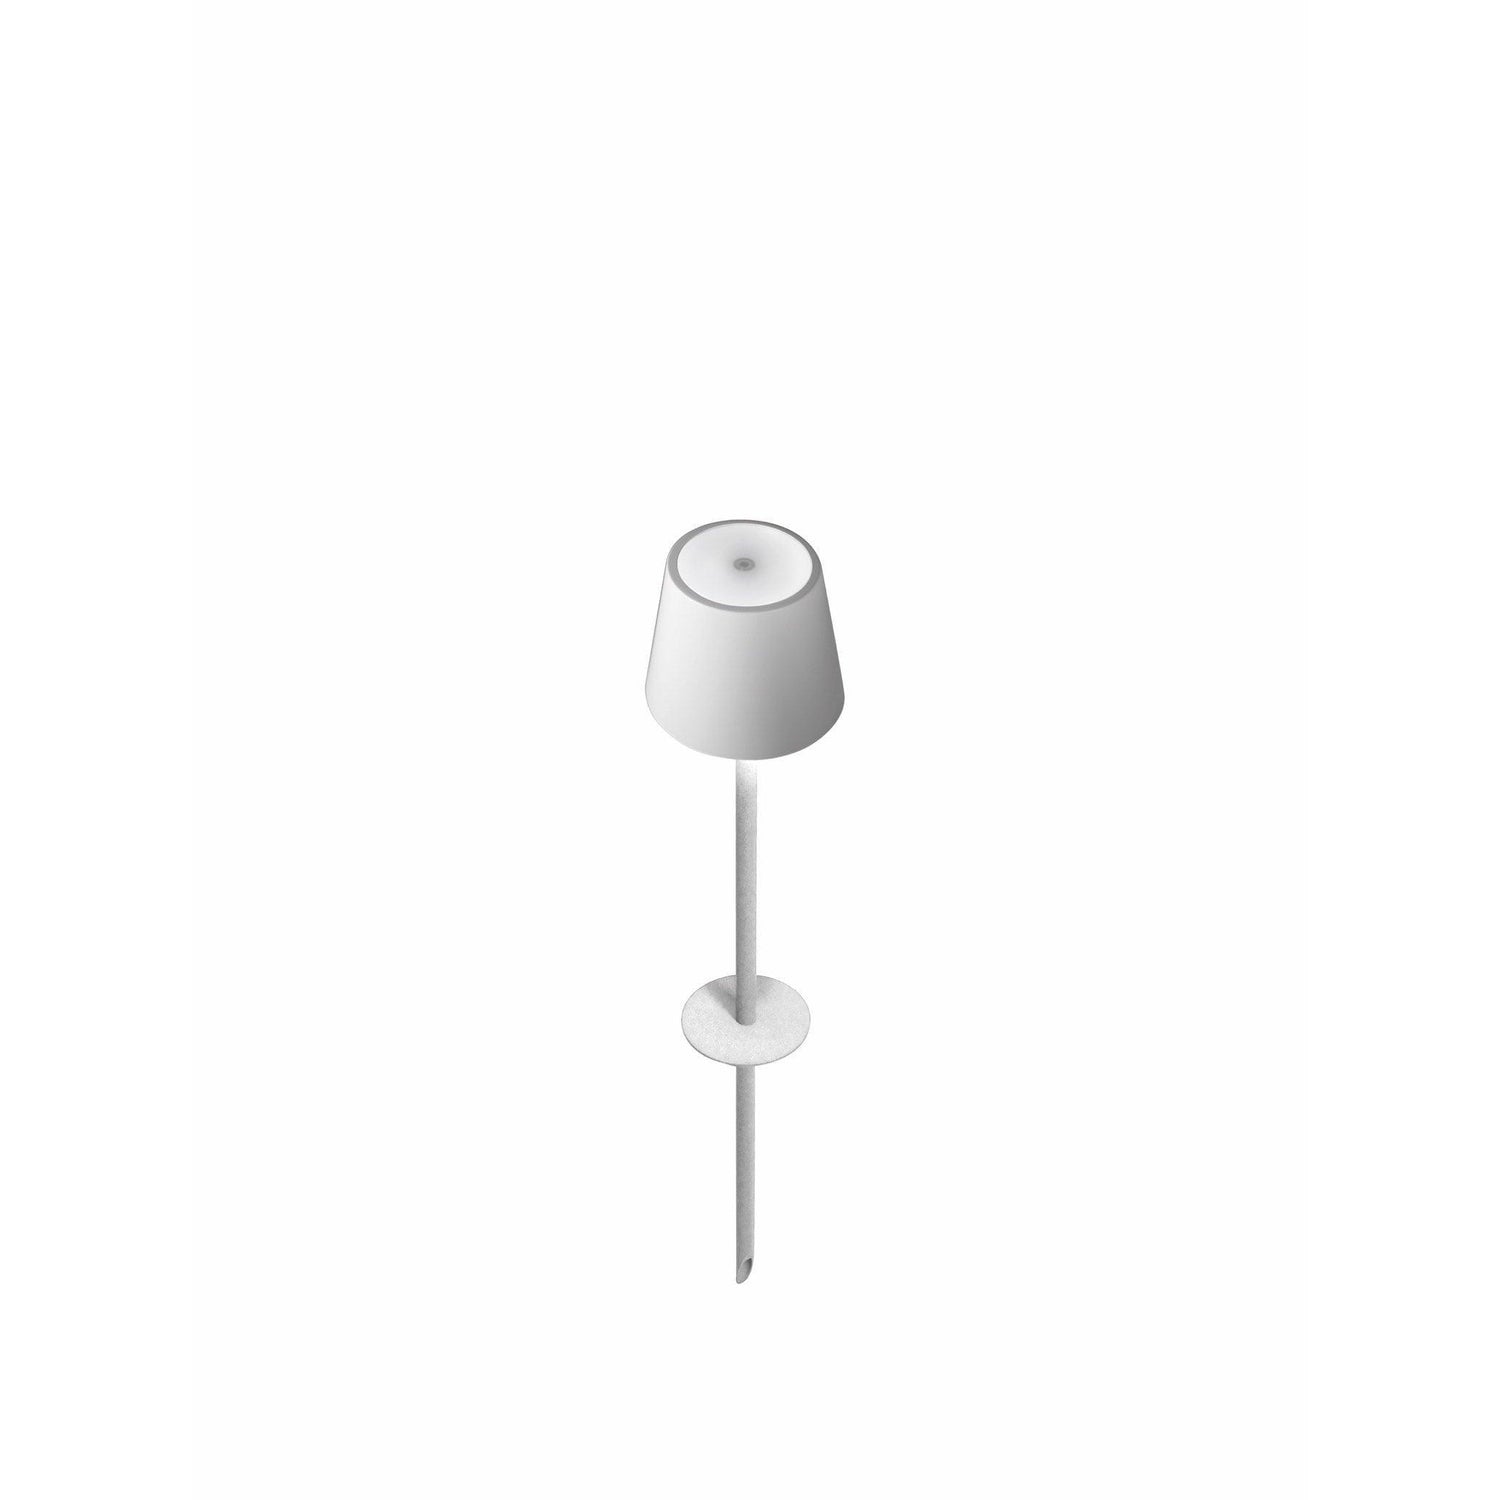 Zafferano America - Poldina Peg Lamp - LD0282B3 | Montreal Lighting & Hardware